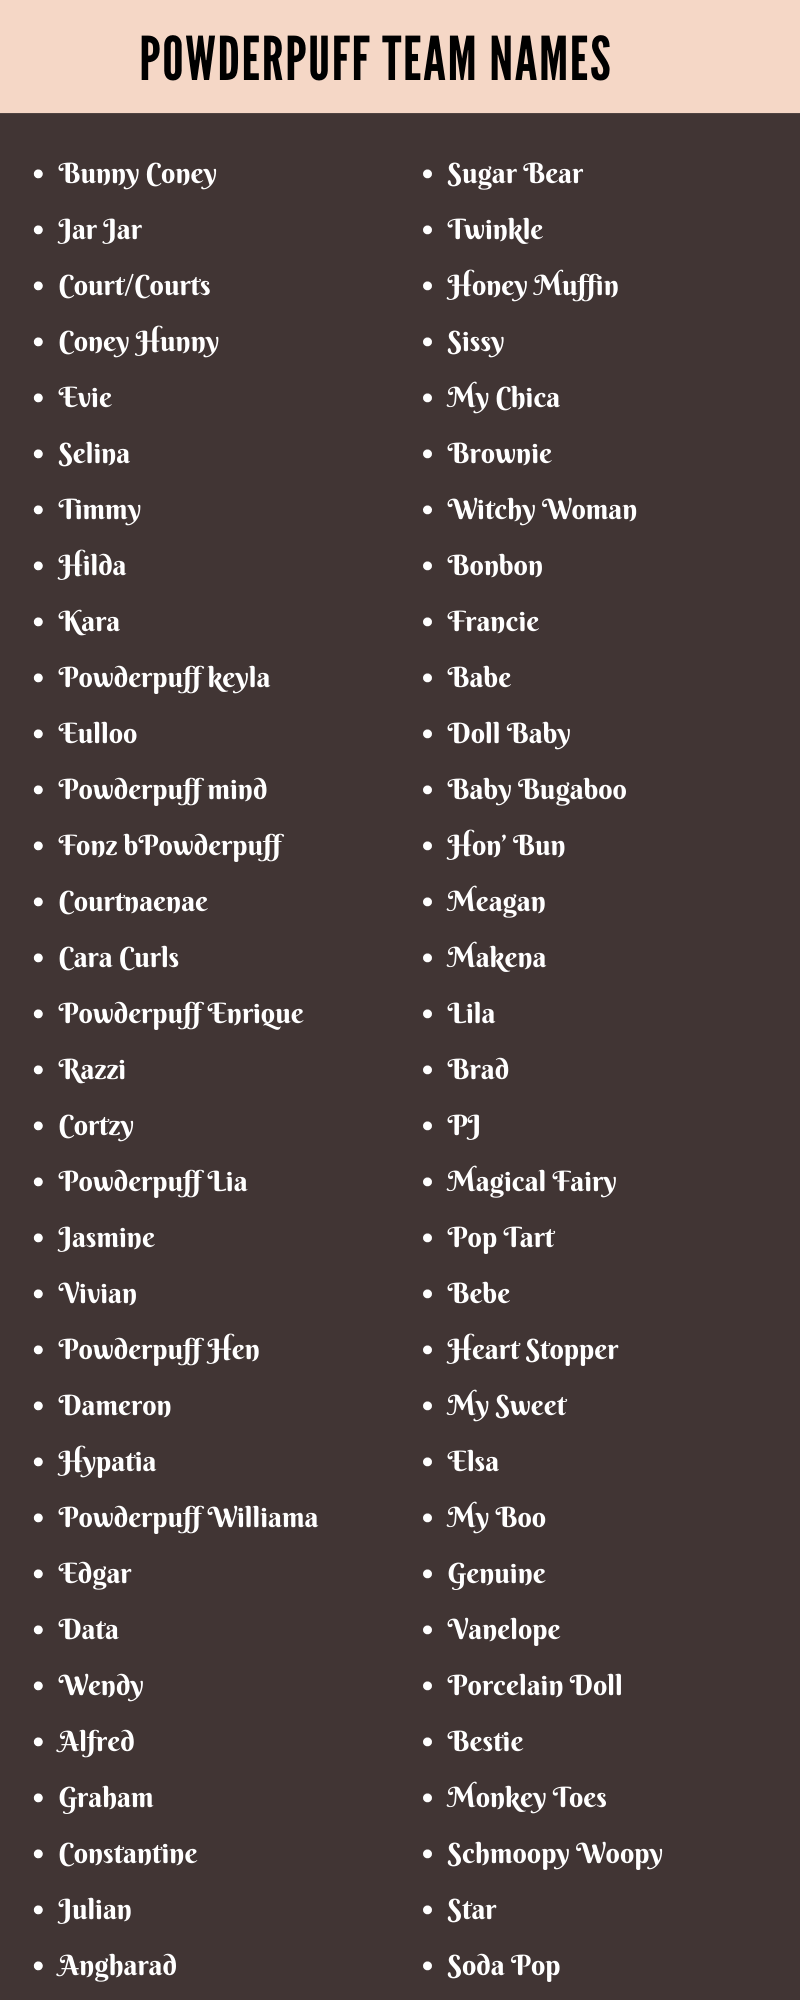 Powderpuff Team Names